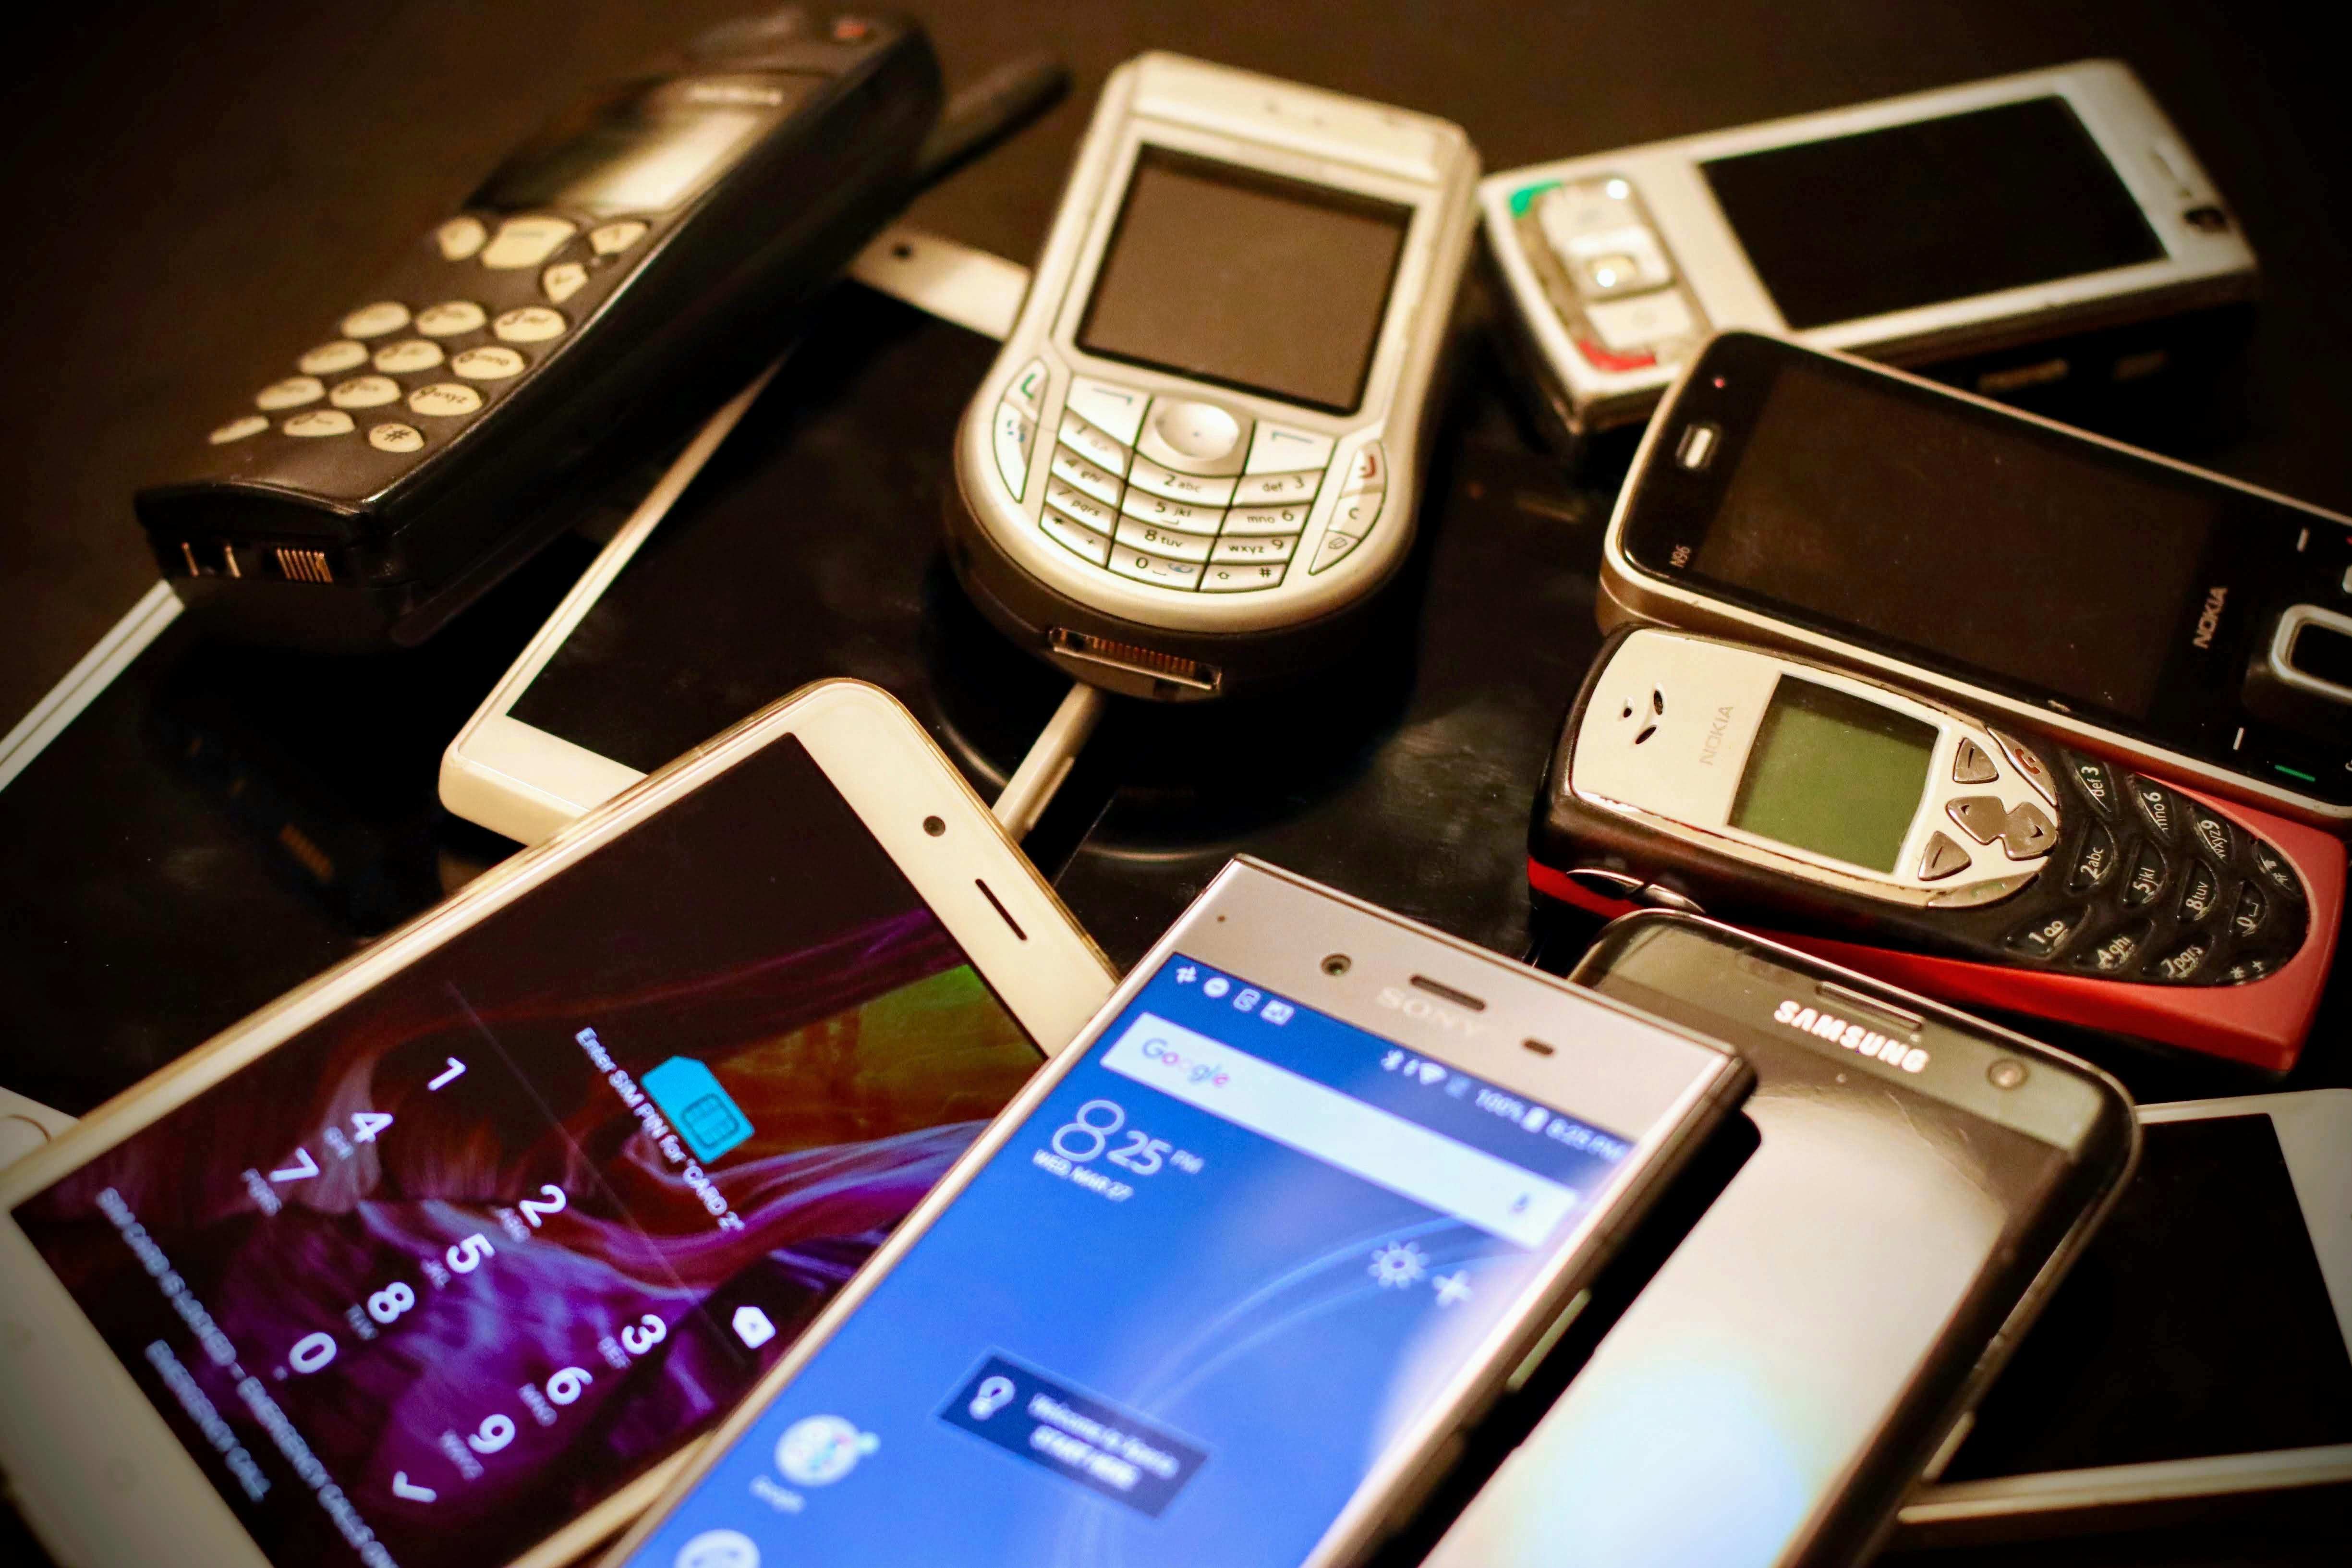 La revolución tecnológica no nació con los iPhone: ¿tres teléfonos olvidados que allanaron el camino? - imagen de noticias en imei.info